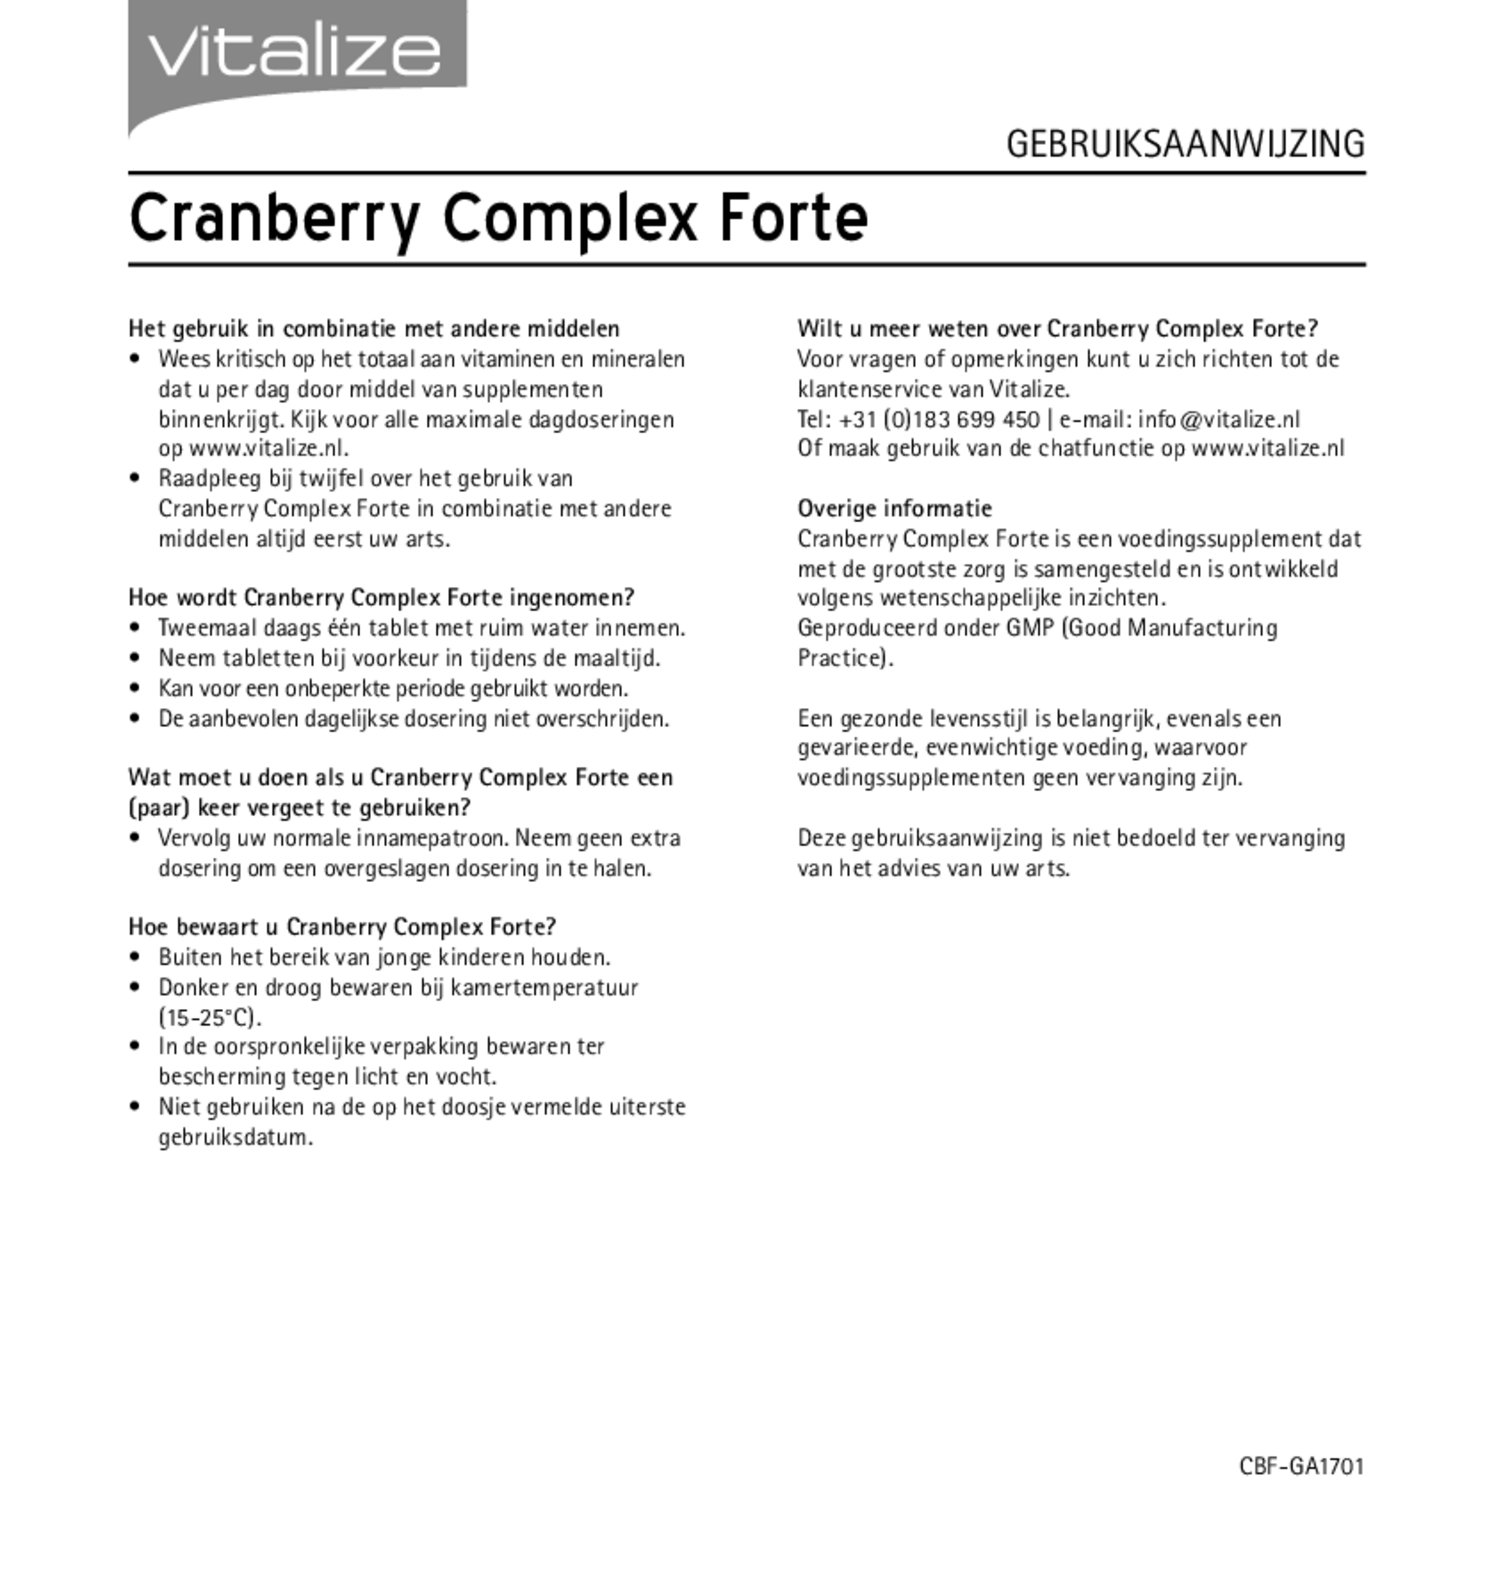 Cranberry Complex Forte Tabletten afbeelding van document #2, gebruiksaanwijzing